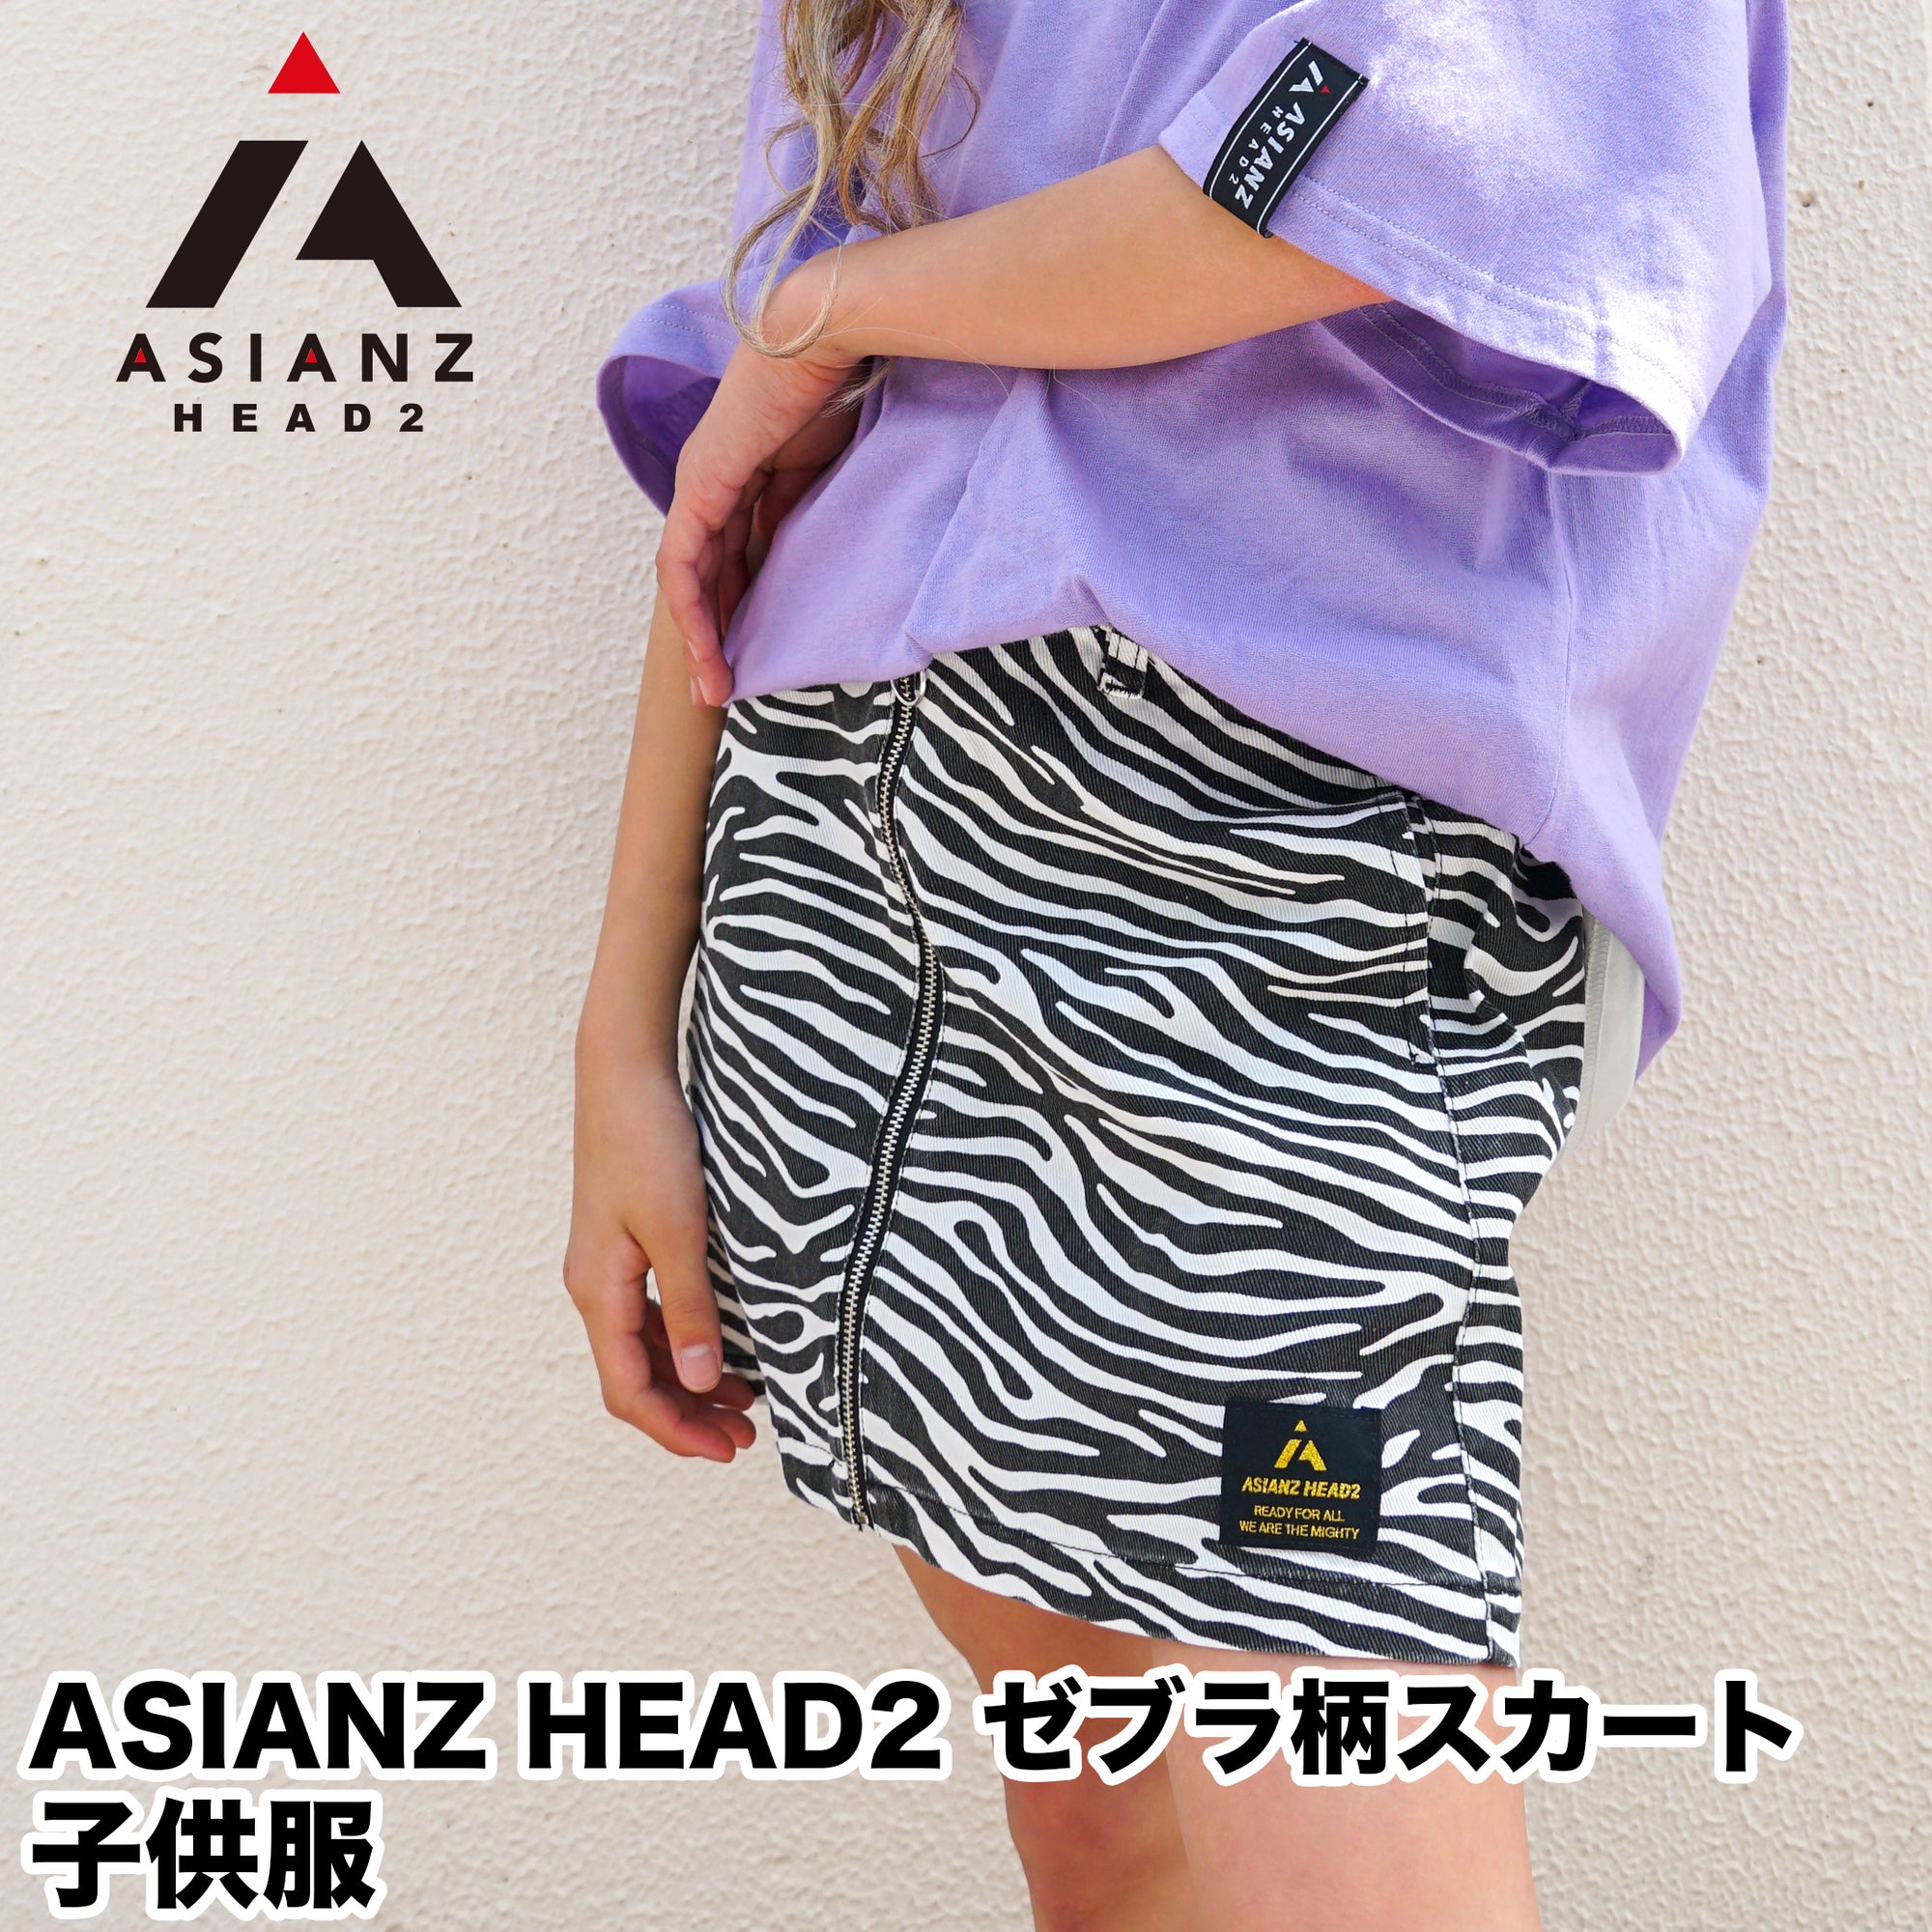 (40%オフ! セール商品)ASIANZ HEAD2 ゼブラ柄スカート キッズウェアー